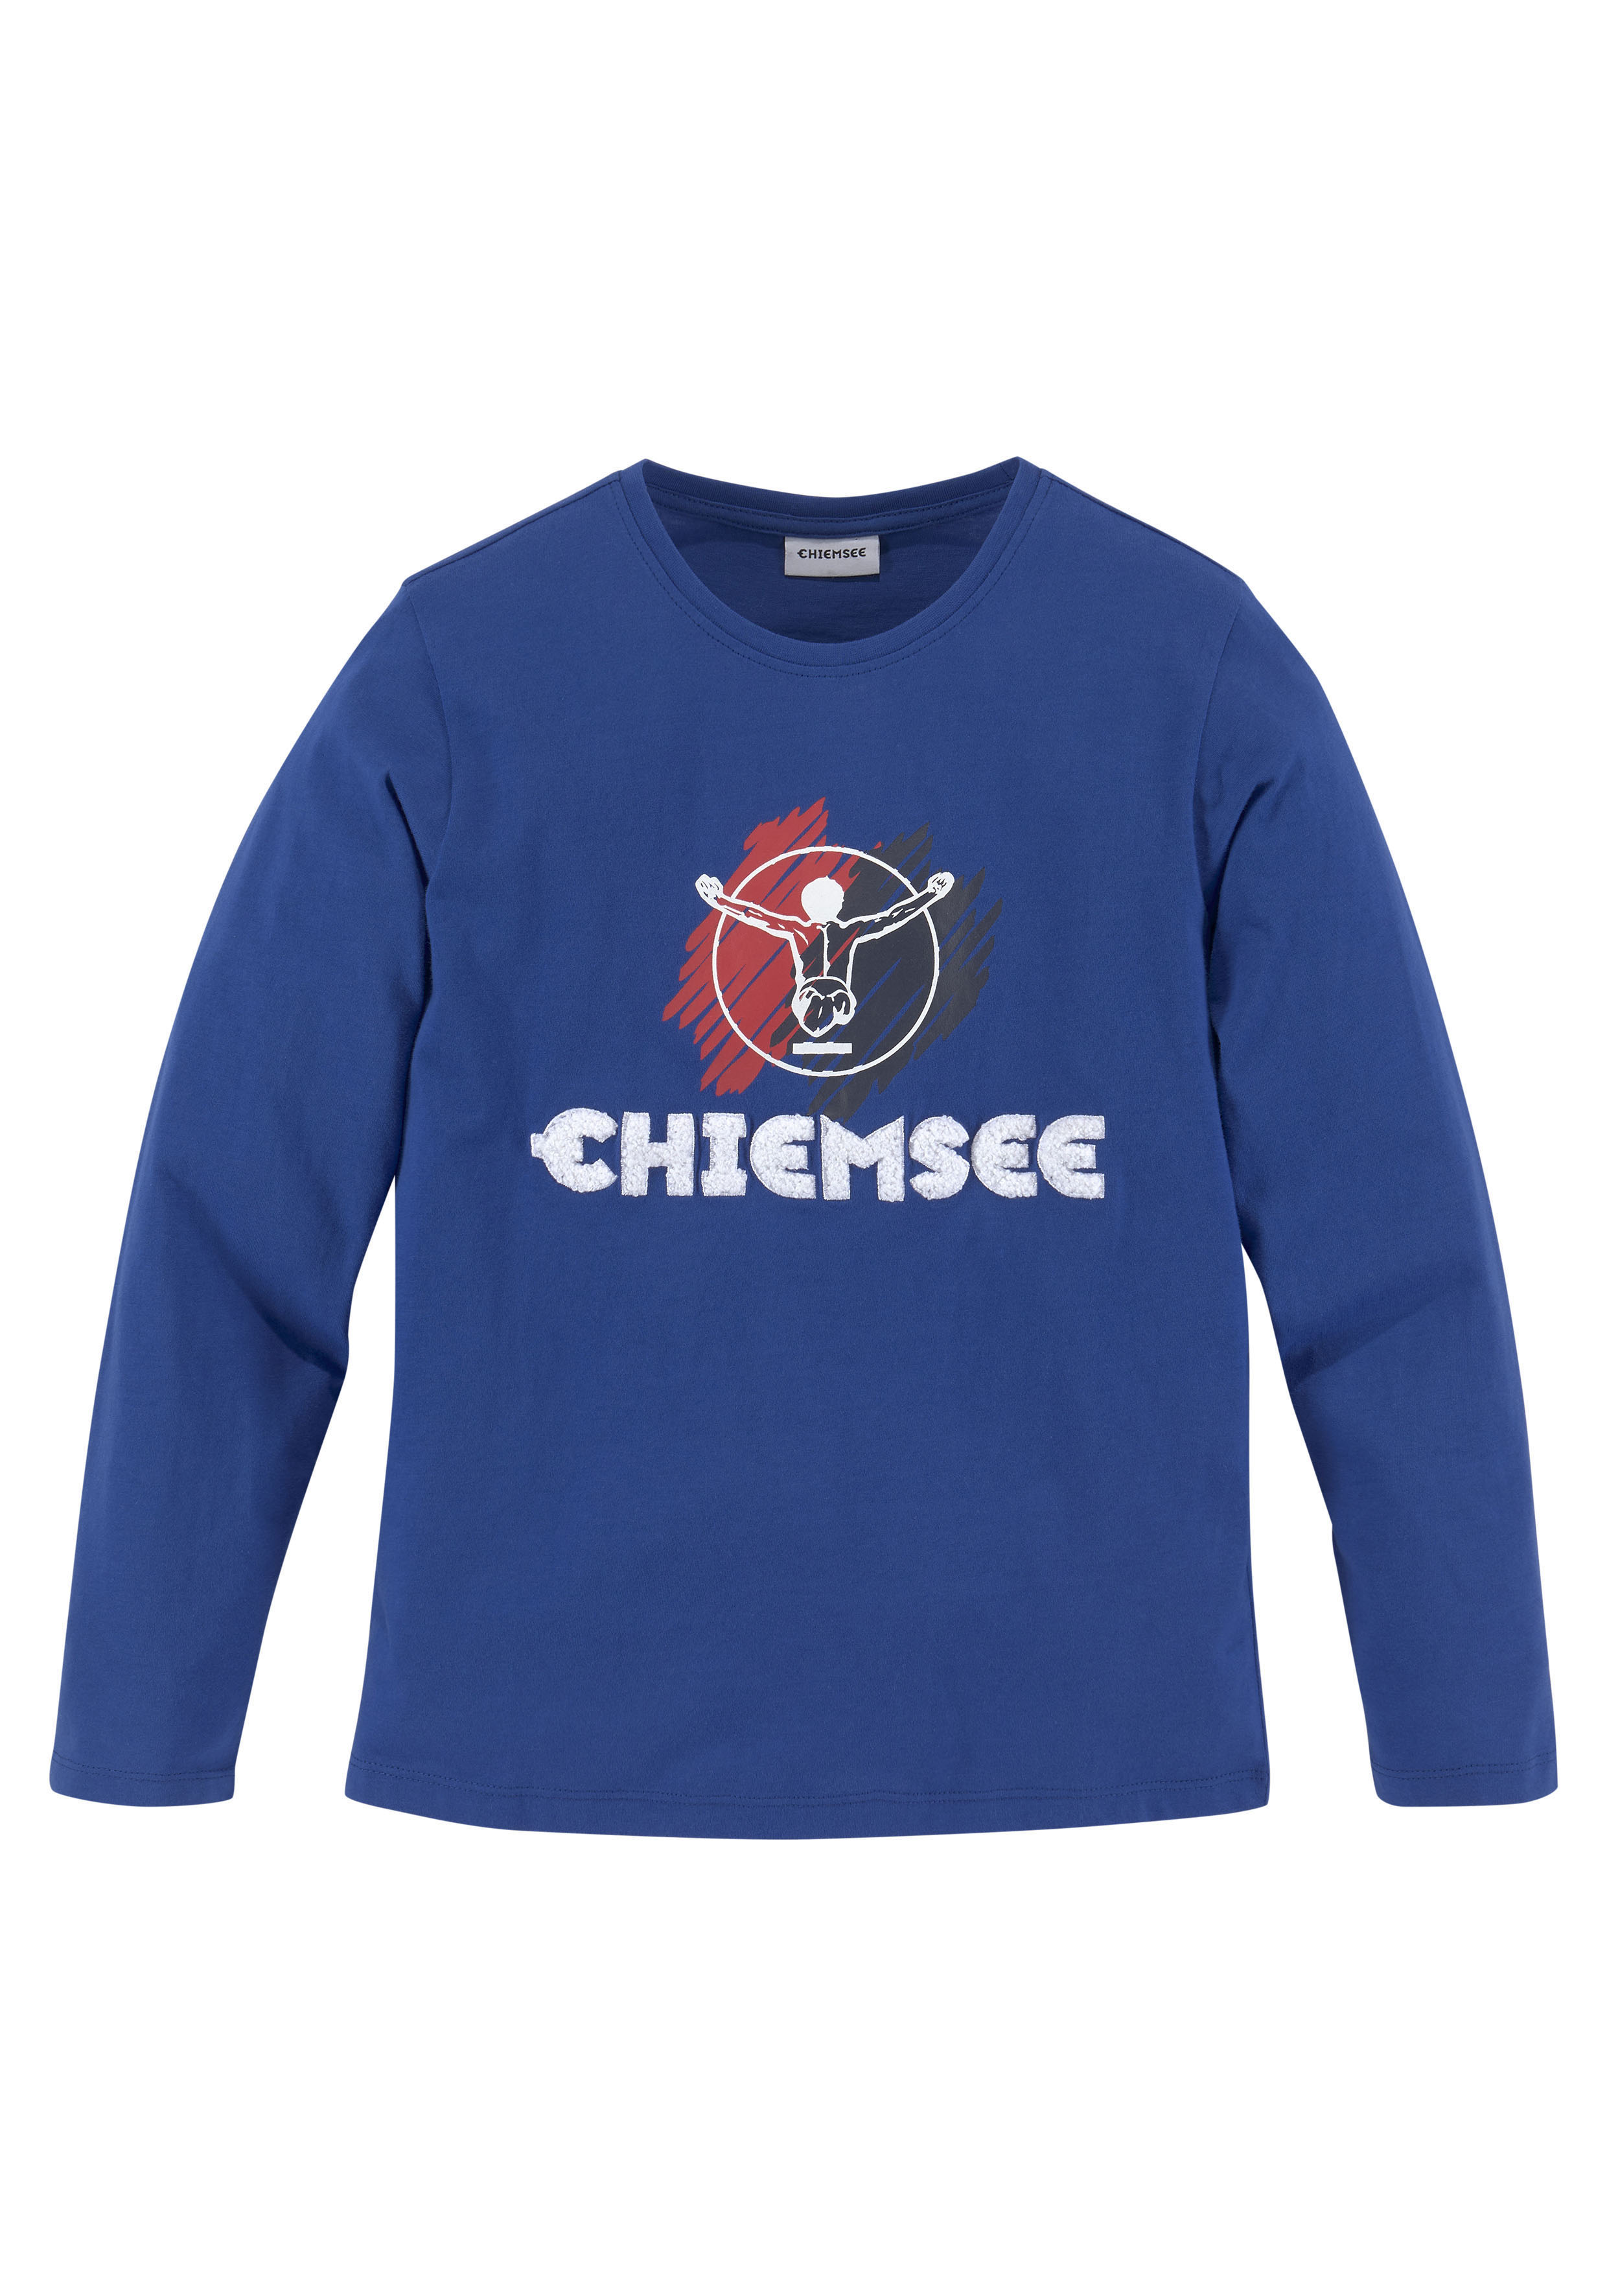 Chiemsee - Mode günstige online shoppen